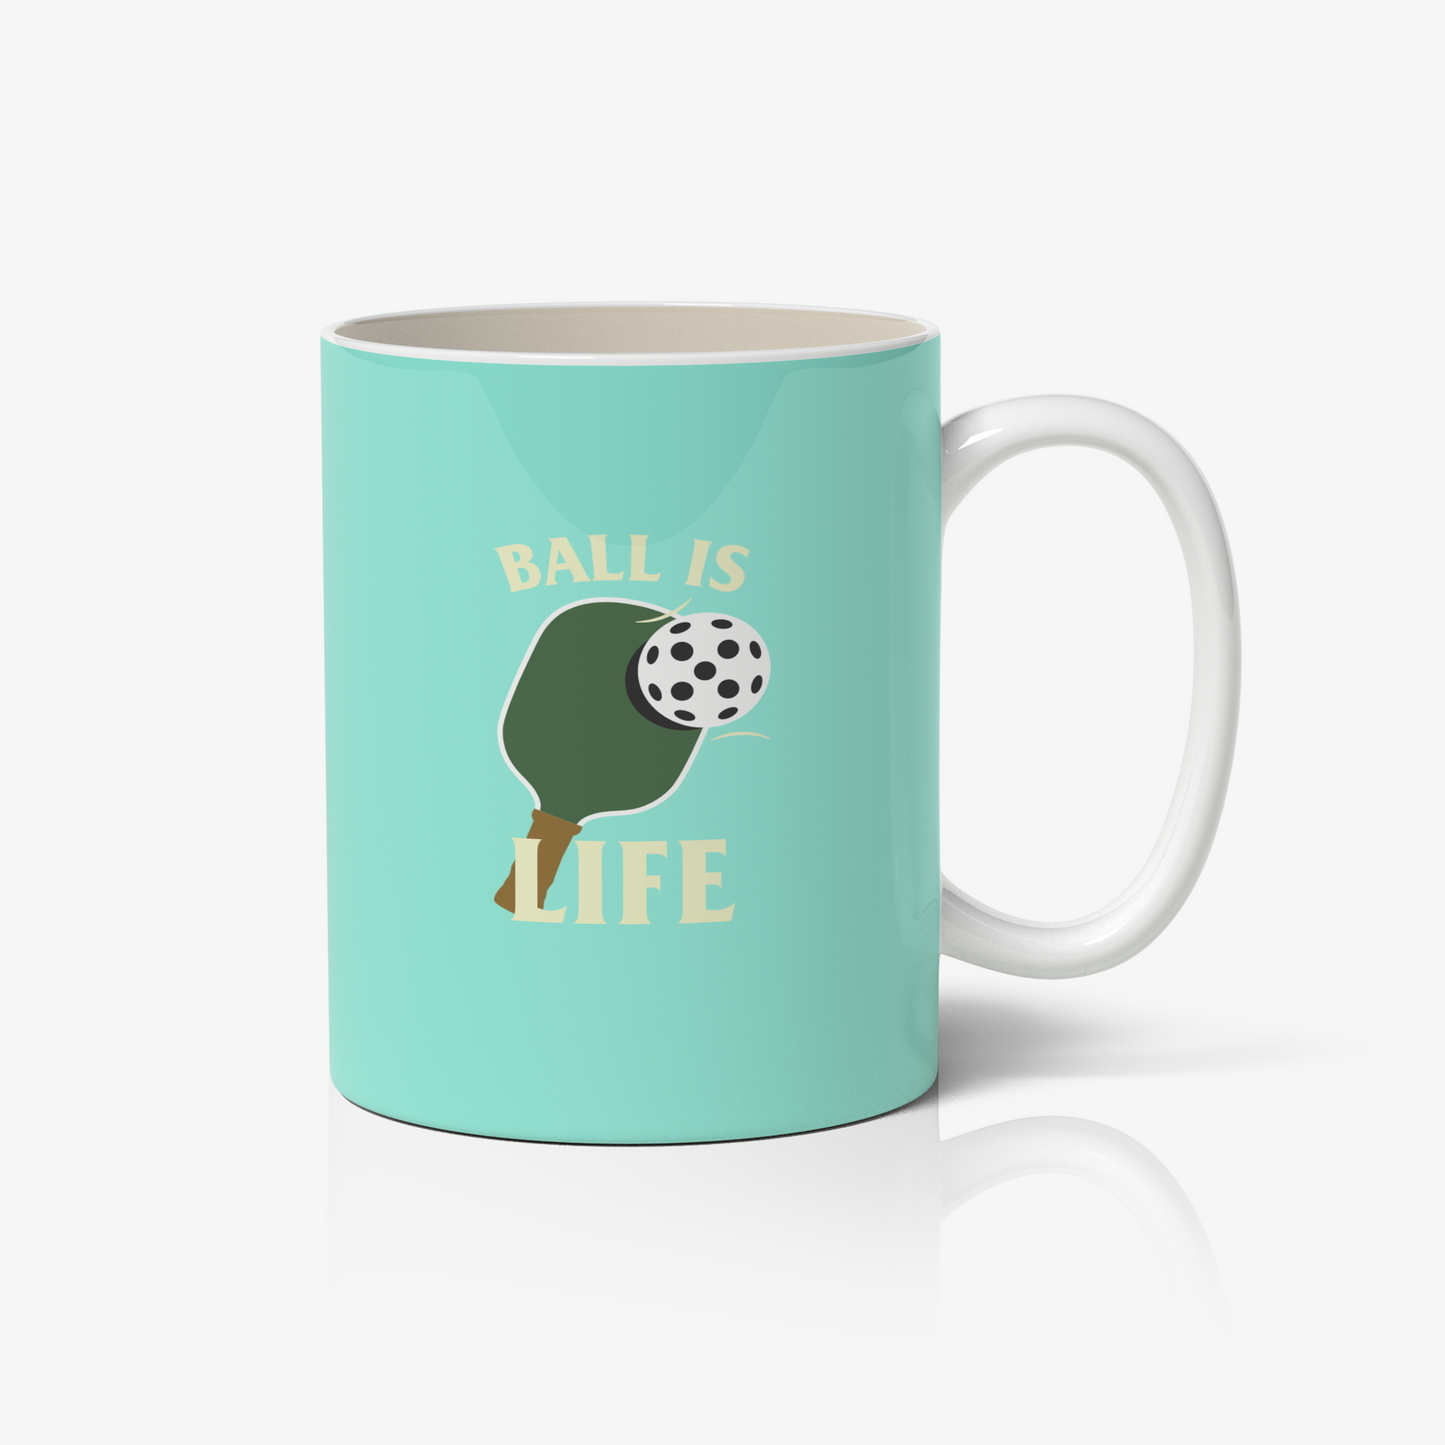 Ball is Life Pickle ball Humor Mug